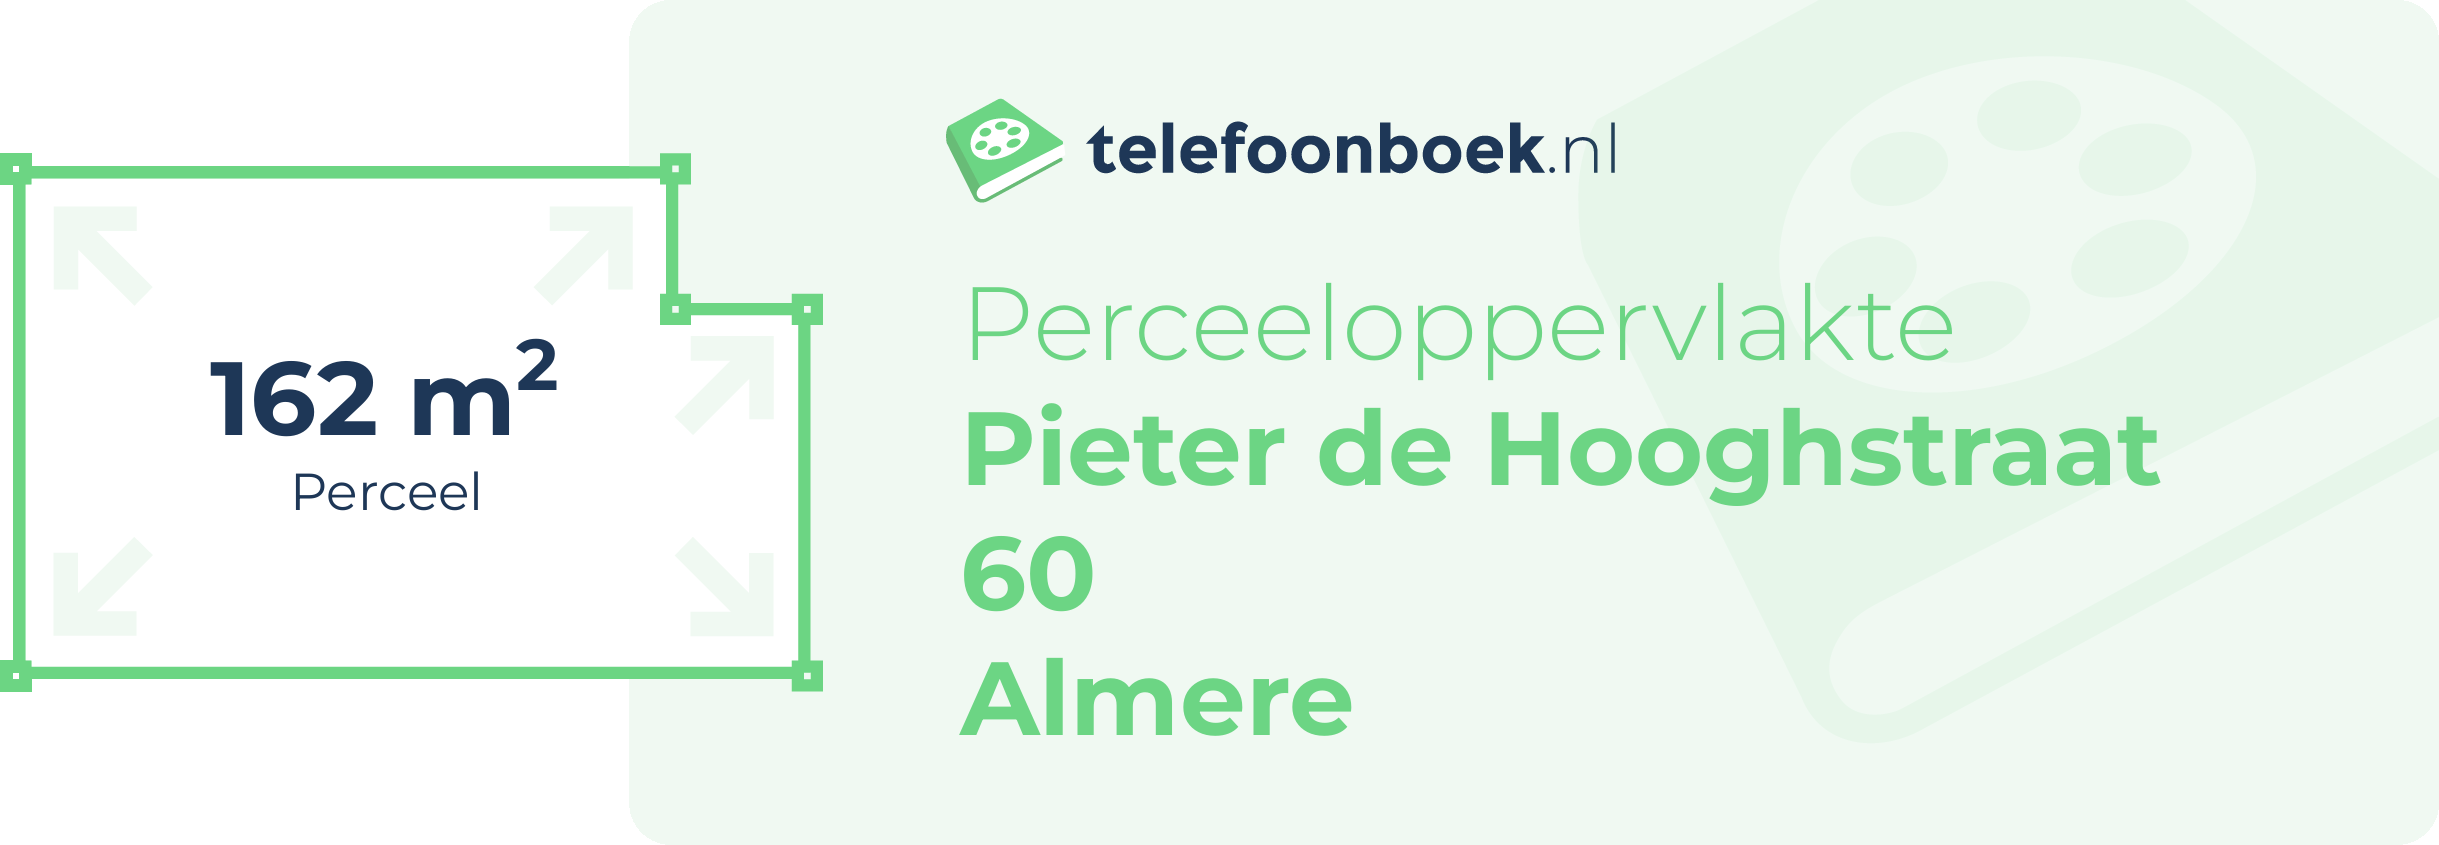 Perceeloppervlakte Pieter De Hooghstraat 60 Almere